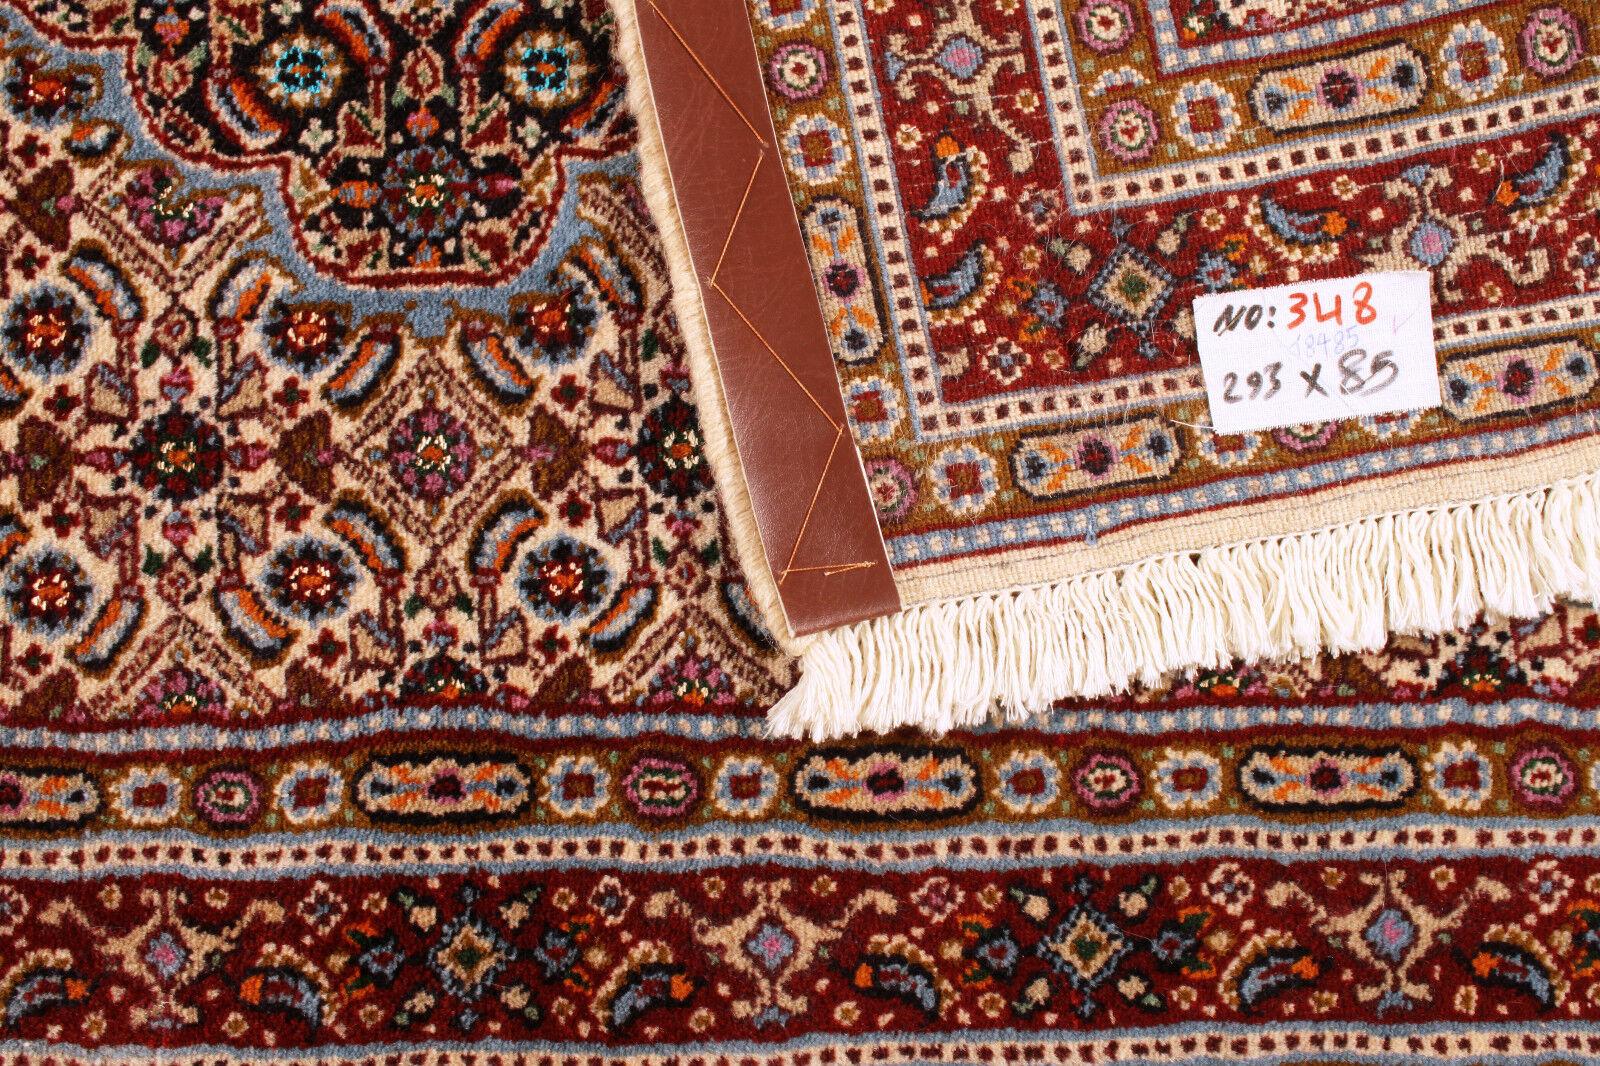 Handgefertigter Vintage Indischer Mahal Läufer Teppich (85cm x 293cm / 2.79ft x 9.61ft)

Erhöhen Sie Ihre Wohnkultur mit der exquisiten Handwerkskunst unseres handgefertigten indischen Mahal-Läuferteppichs im Vintage-Stil. Dieser aus den 1970er